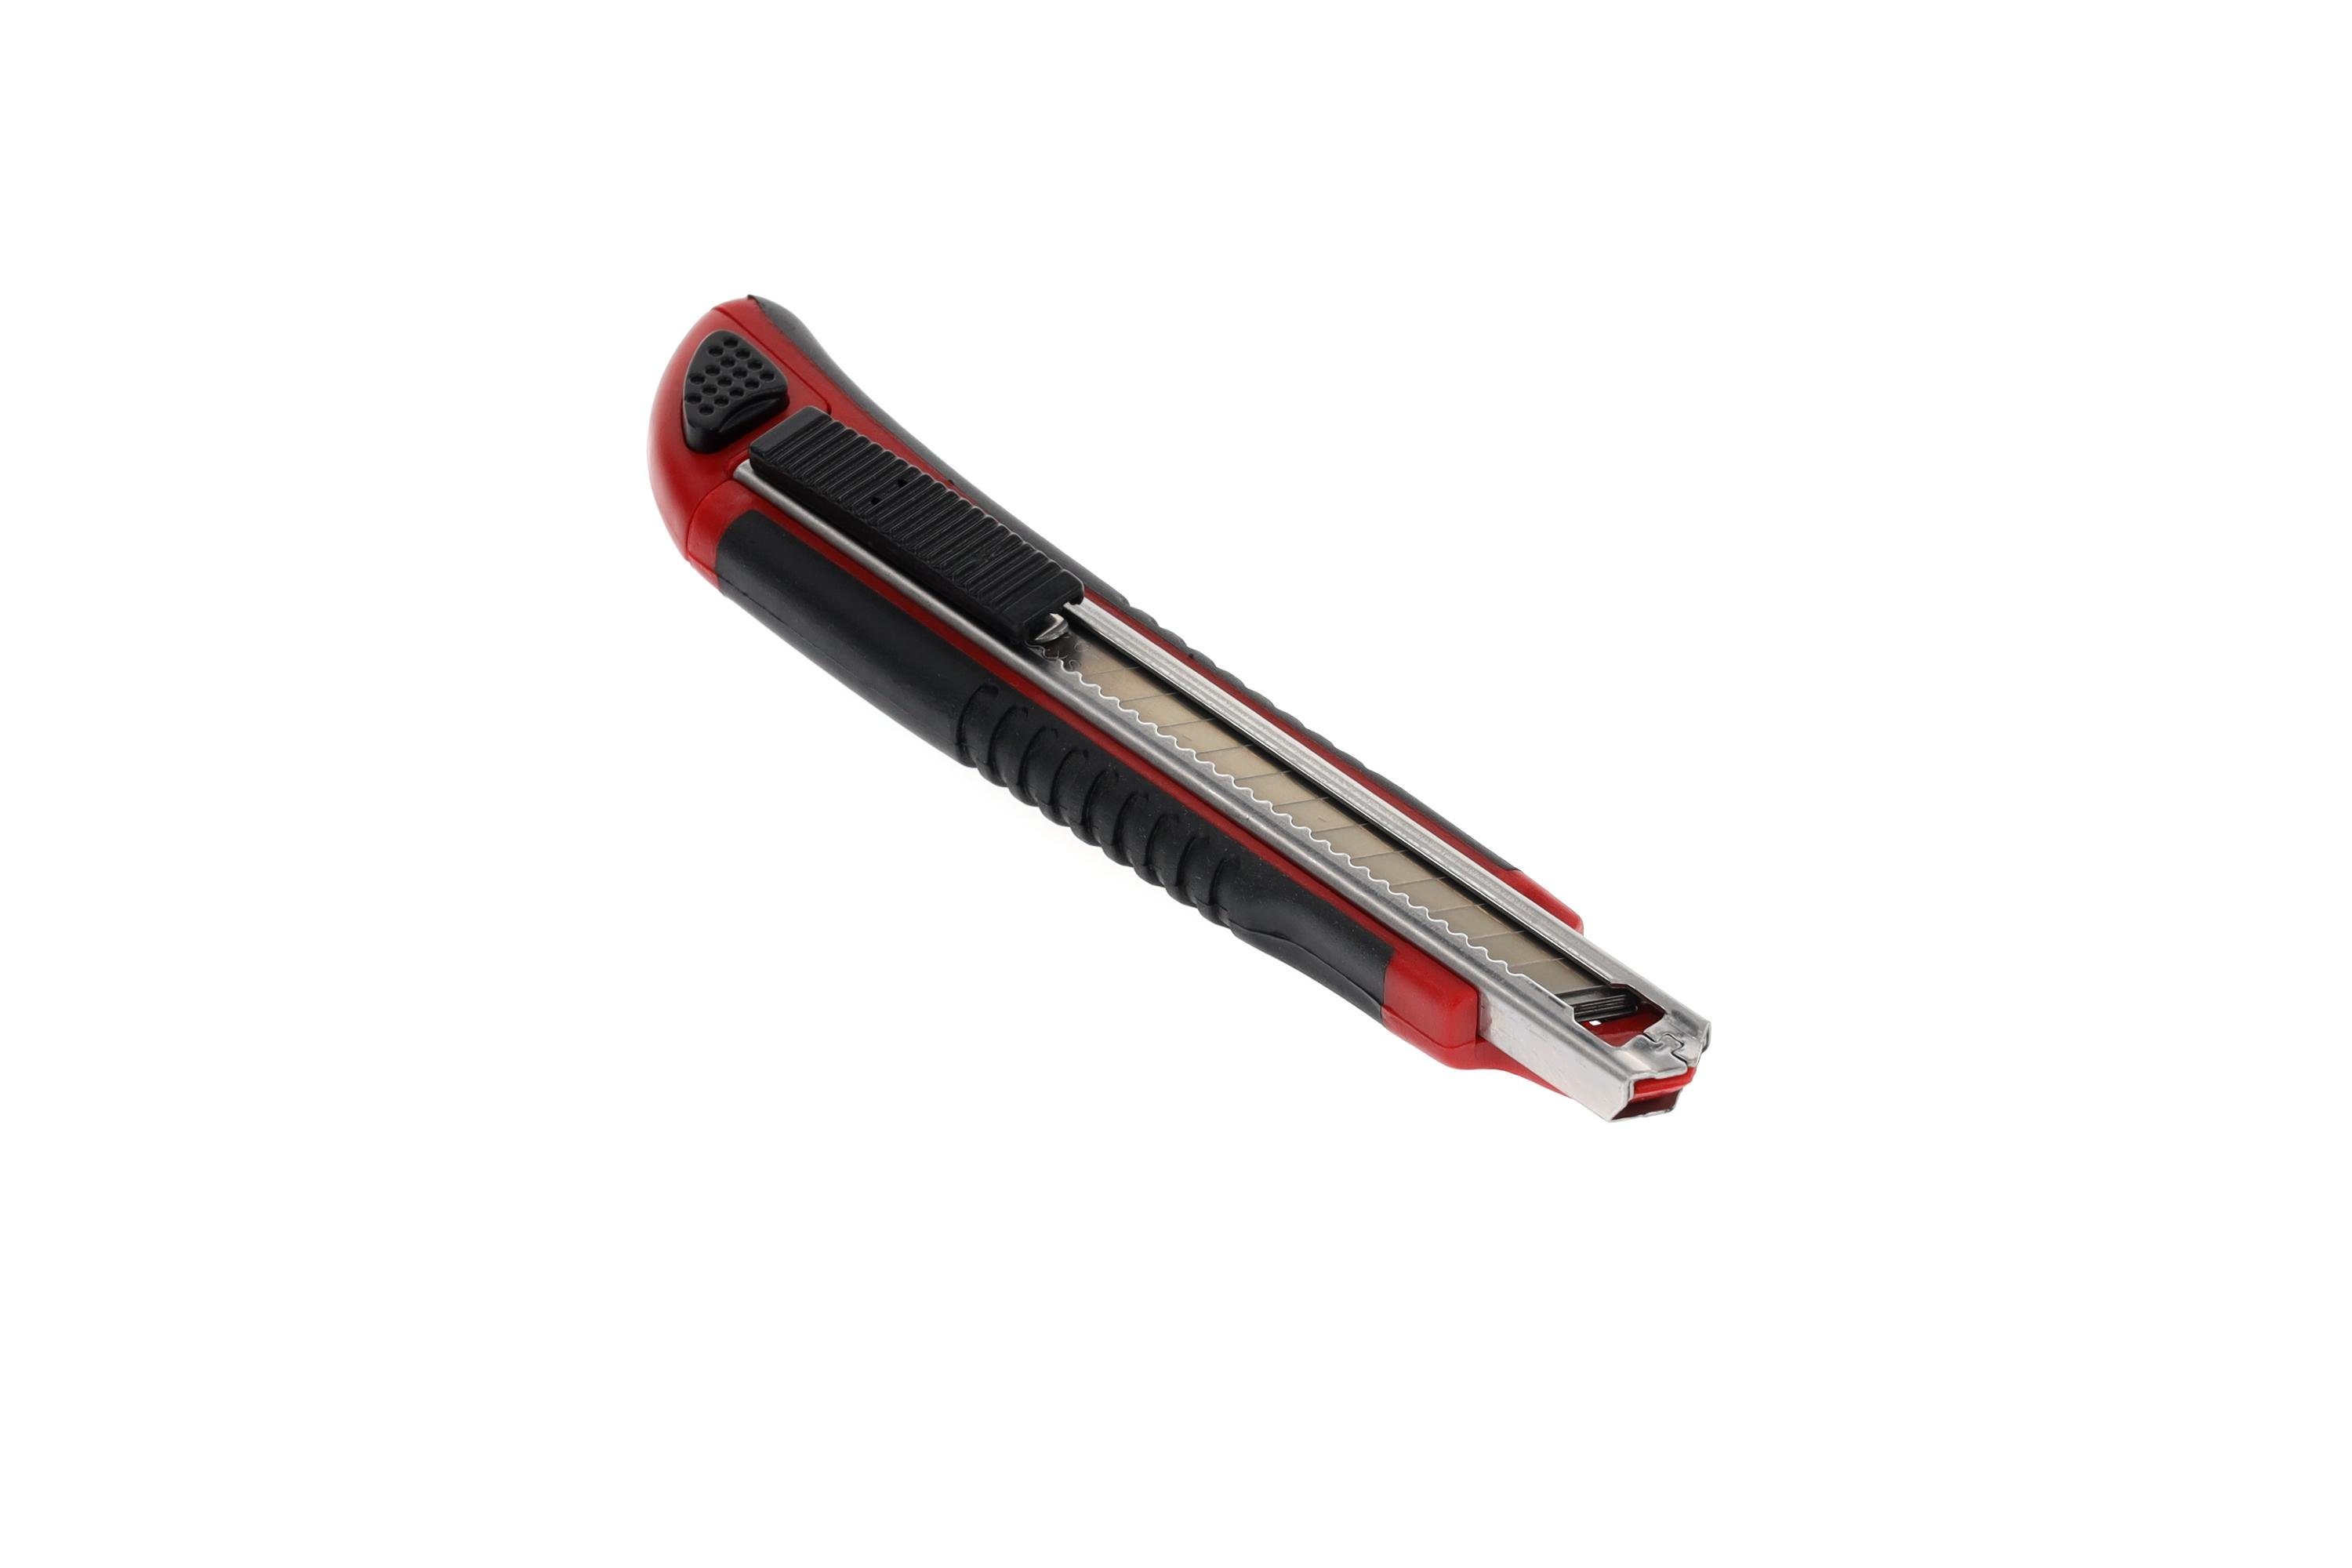 Gedore Red Cuttermesser R93200010 Cuttermesser 9 Klingenbreite mm 5